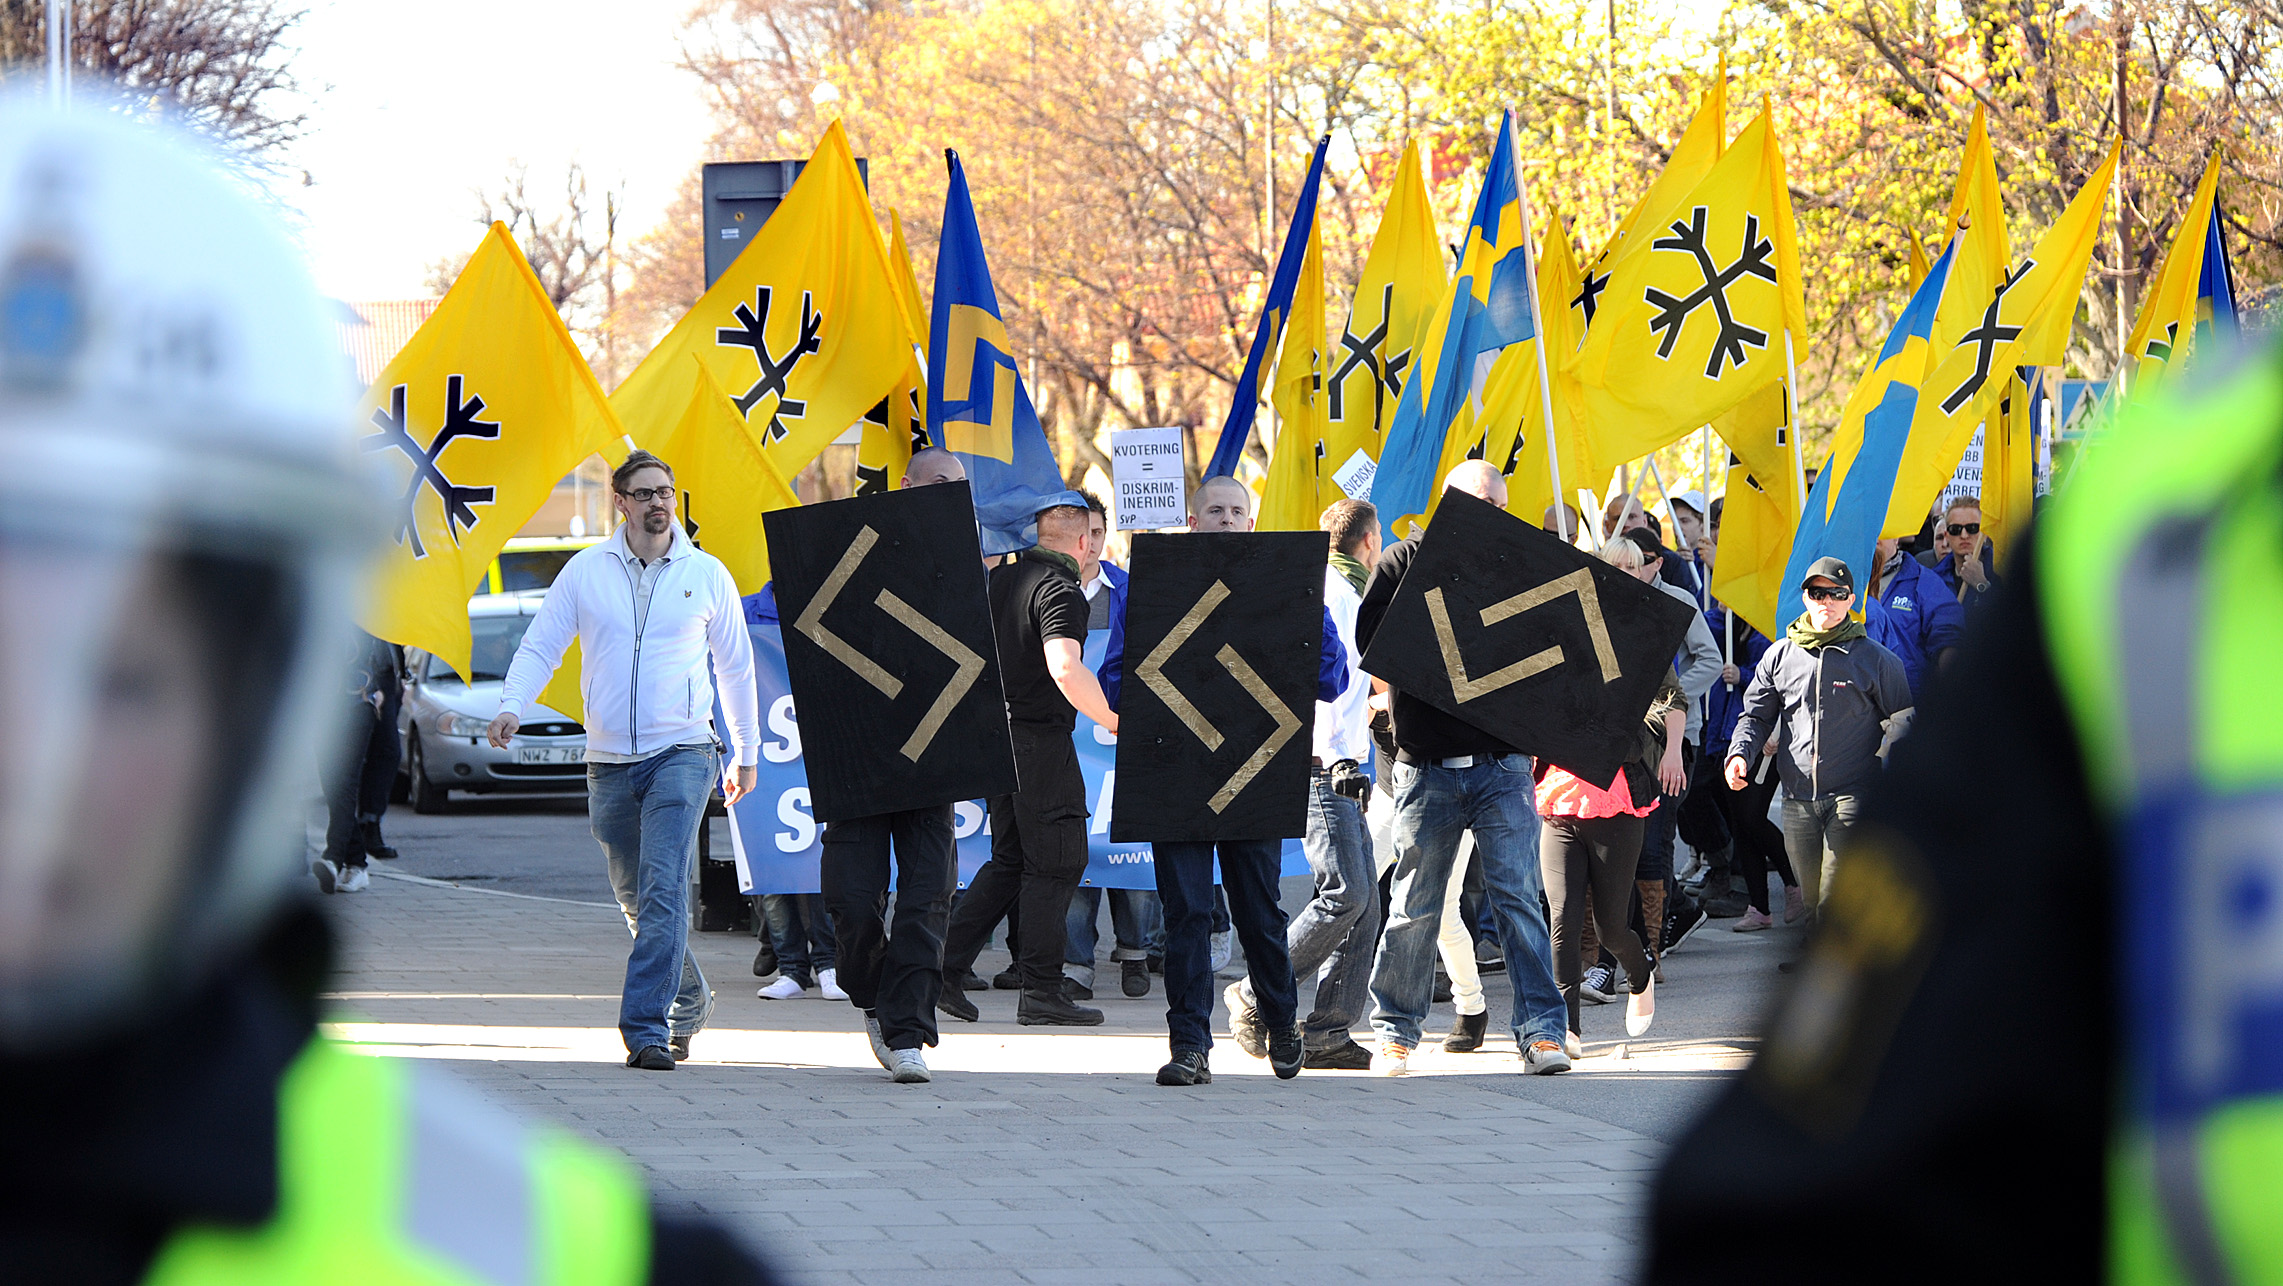 Svenskarnas parti, Första maj, Jonkoping